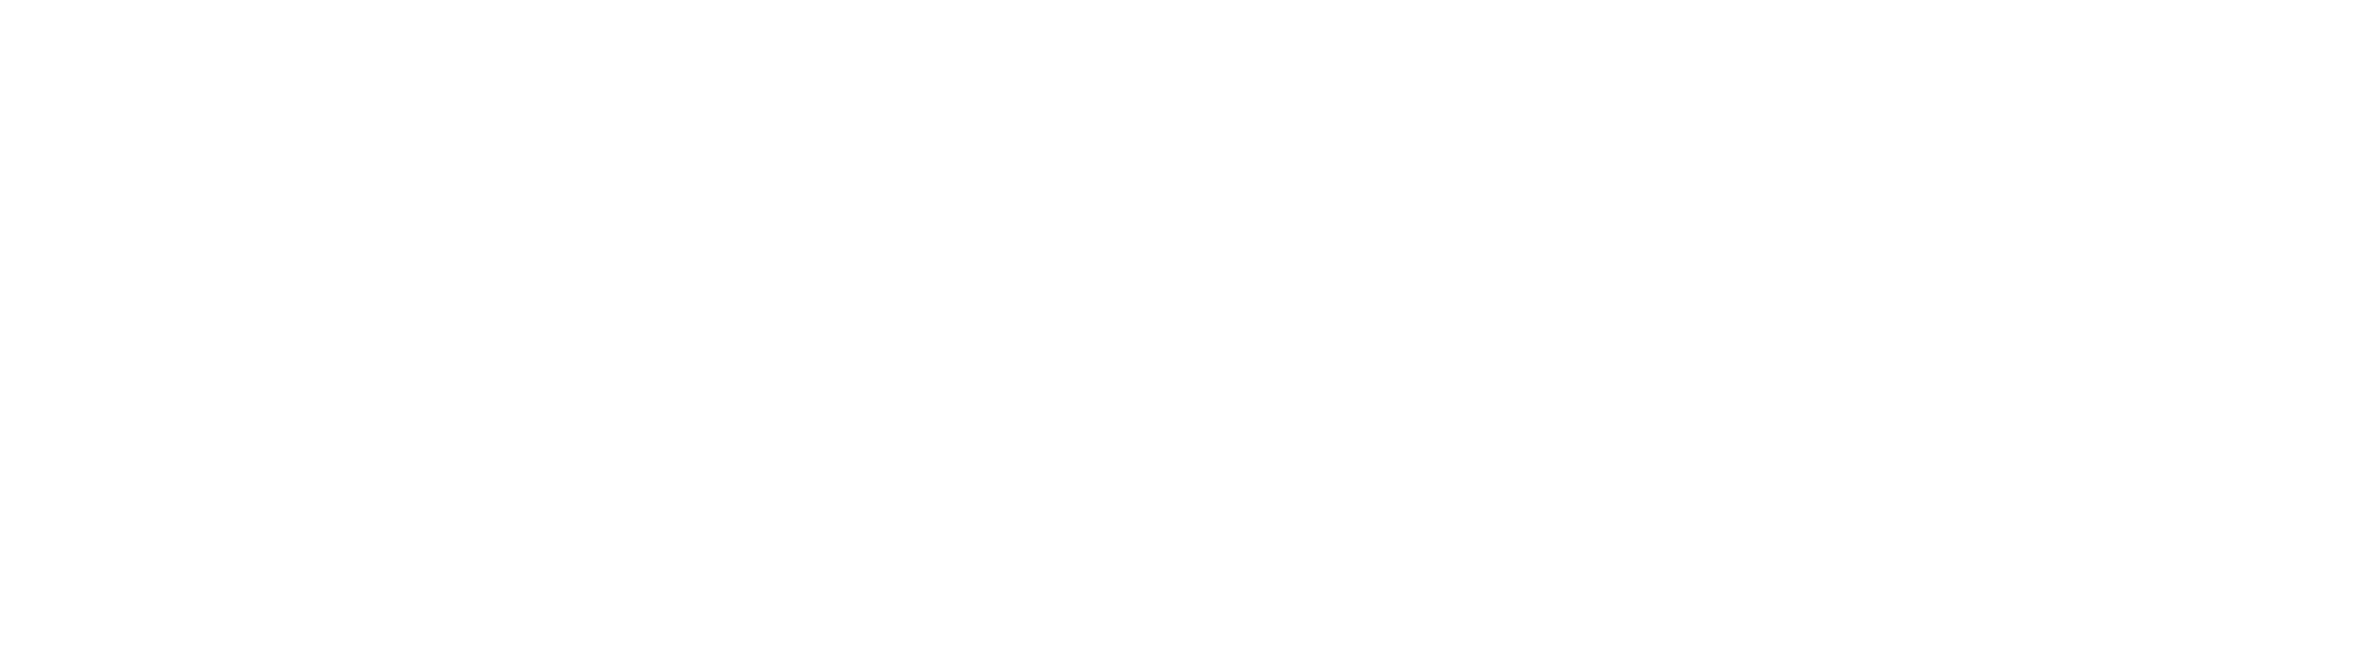 Das Team des Rosenmontagszuges 2022 Kölner Rosenmontagszeitung Offizielles Organ des Festkomitees Kölner Karneval von   